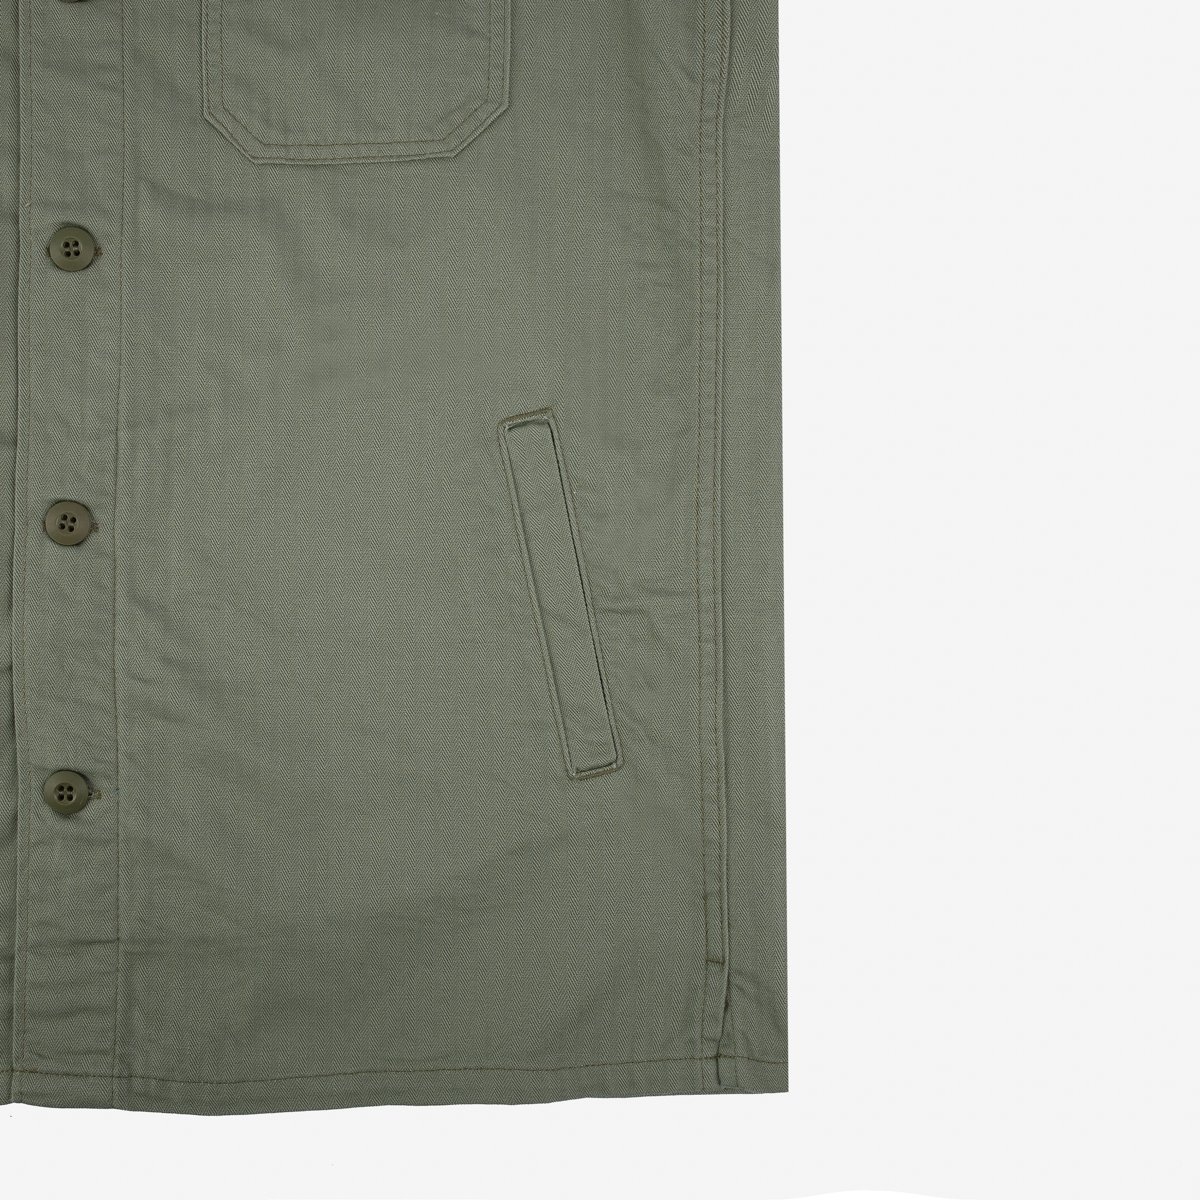 IHSH-385-ODG 9oz Herringbone Military Shirt - Olive Drab Green - 12